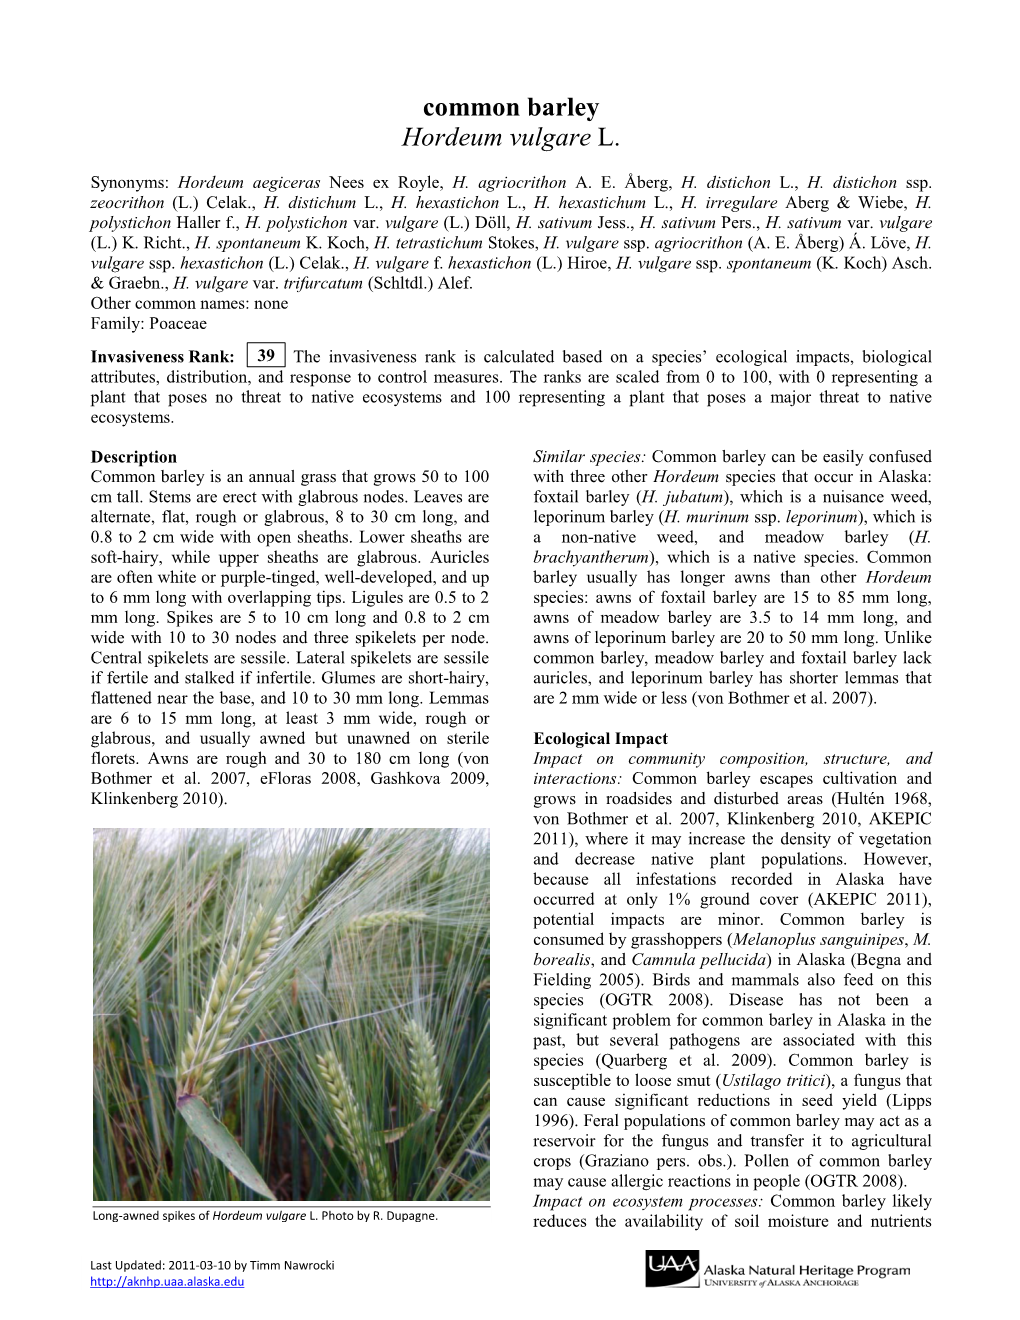 Common Barley Hordeum Vulgare L